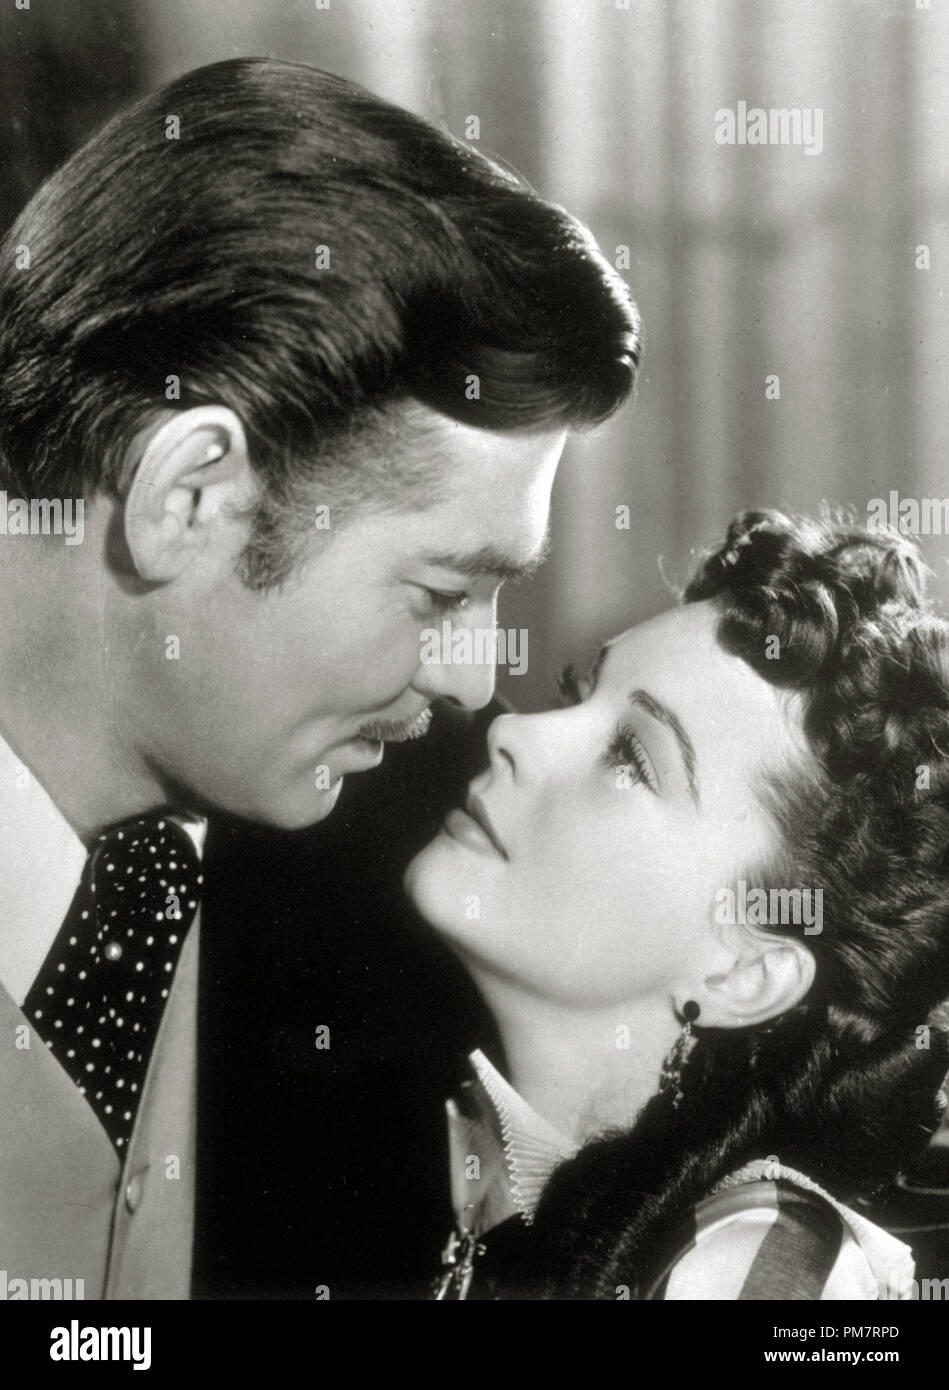 Clark Gable und Vivien Leigh, 'Vom Winde verweht' 1939 MGM. Datei Referenz # 31386 433 Stockfoto